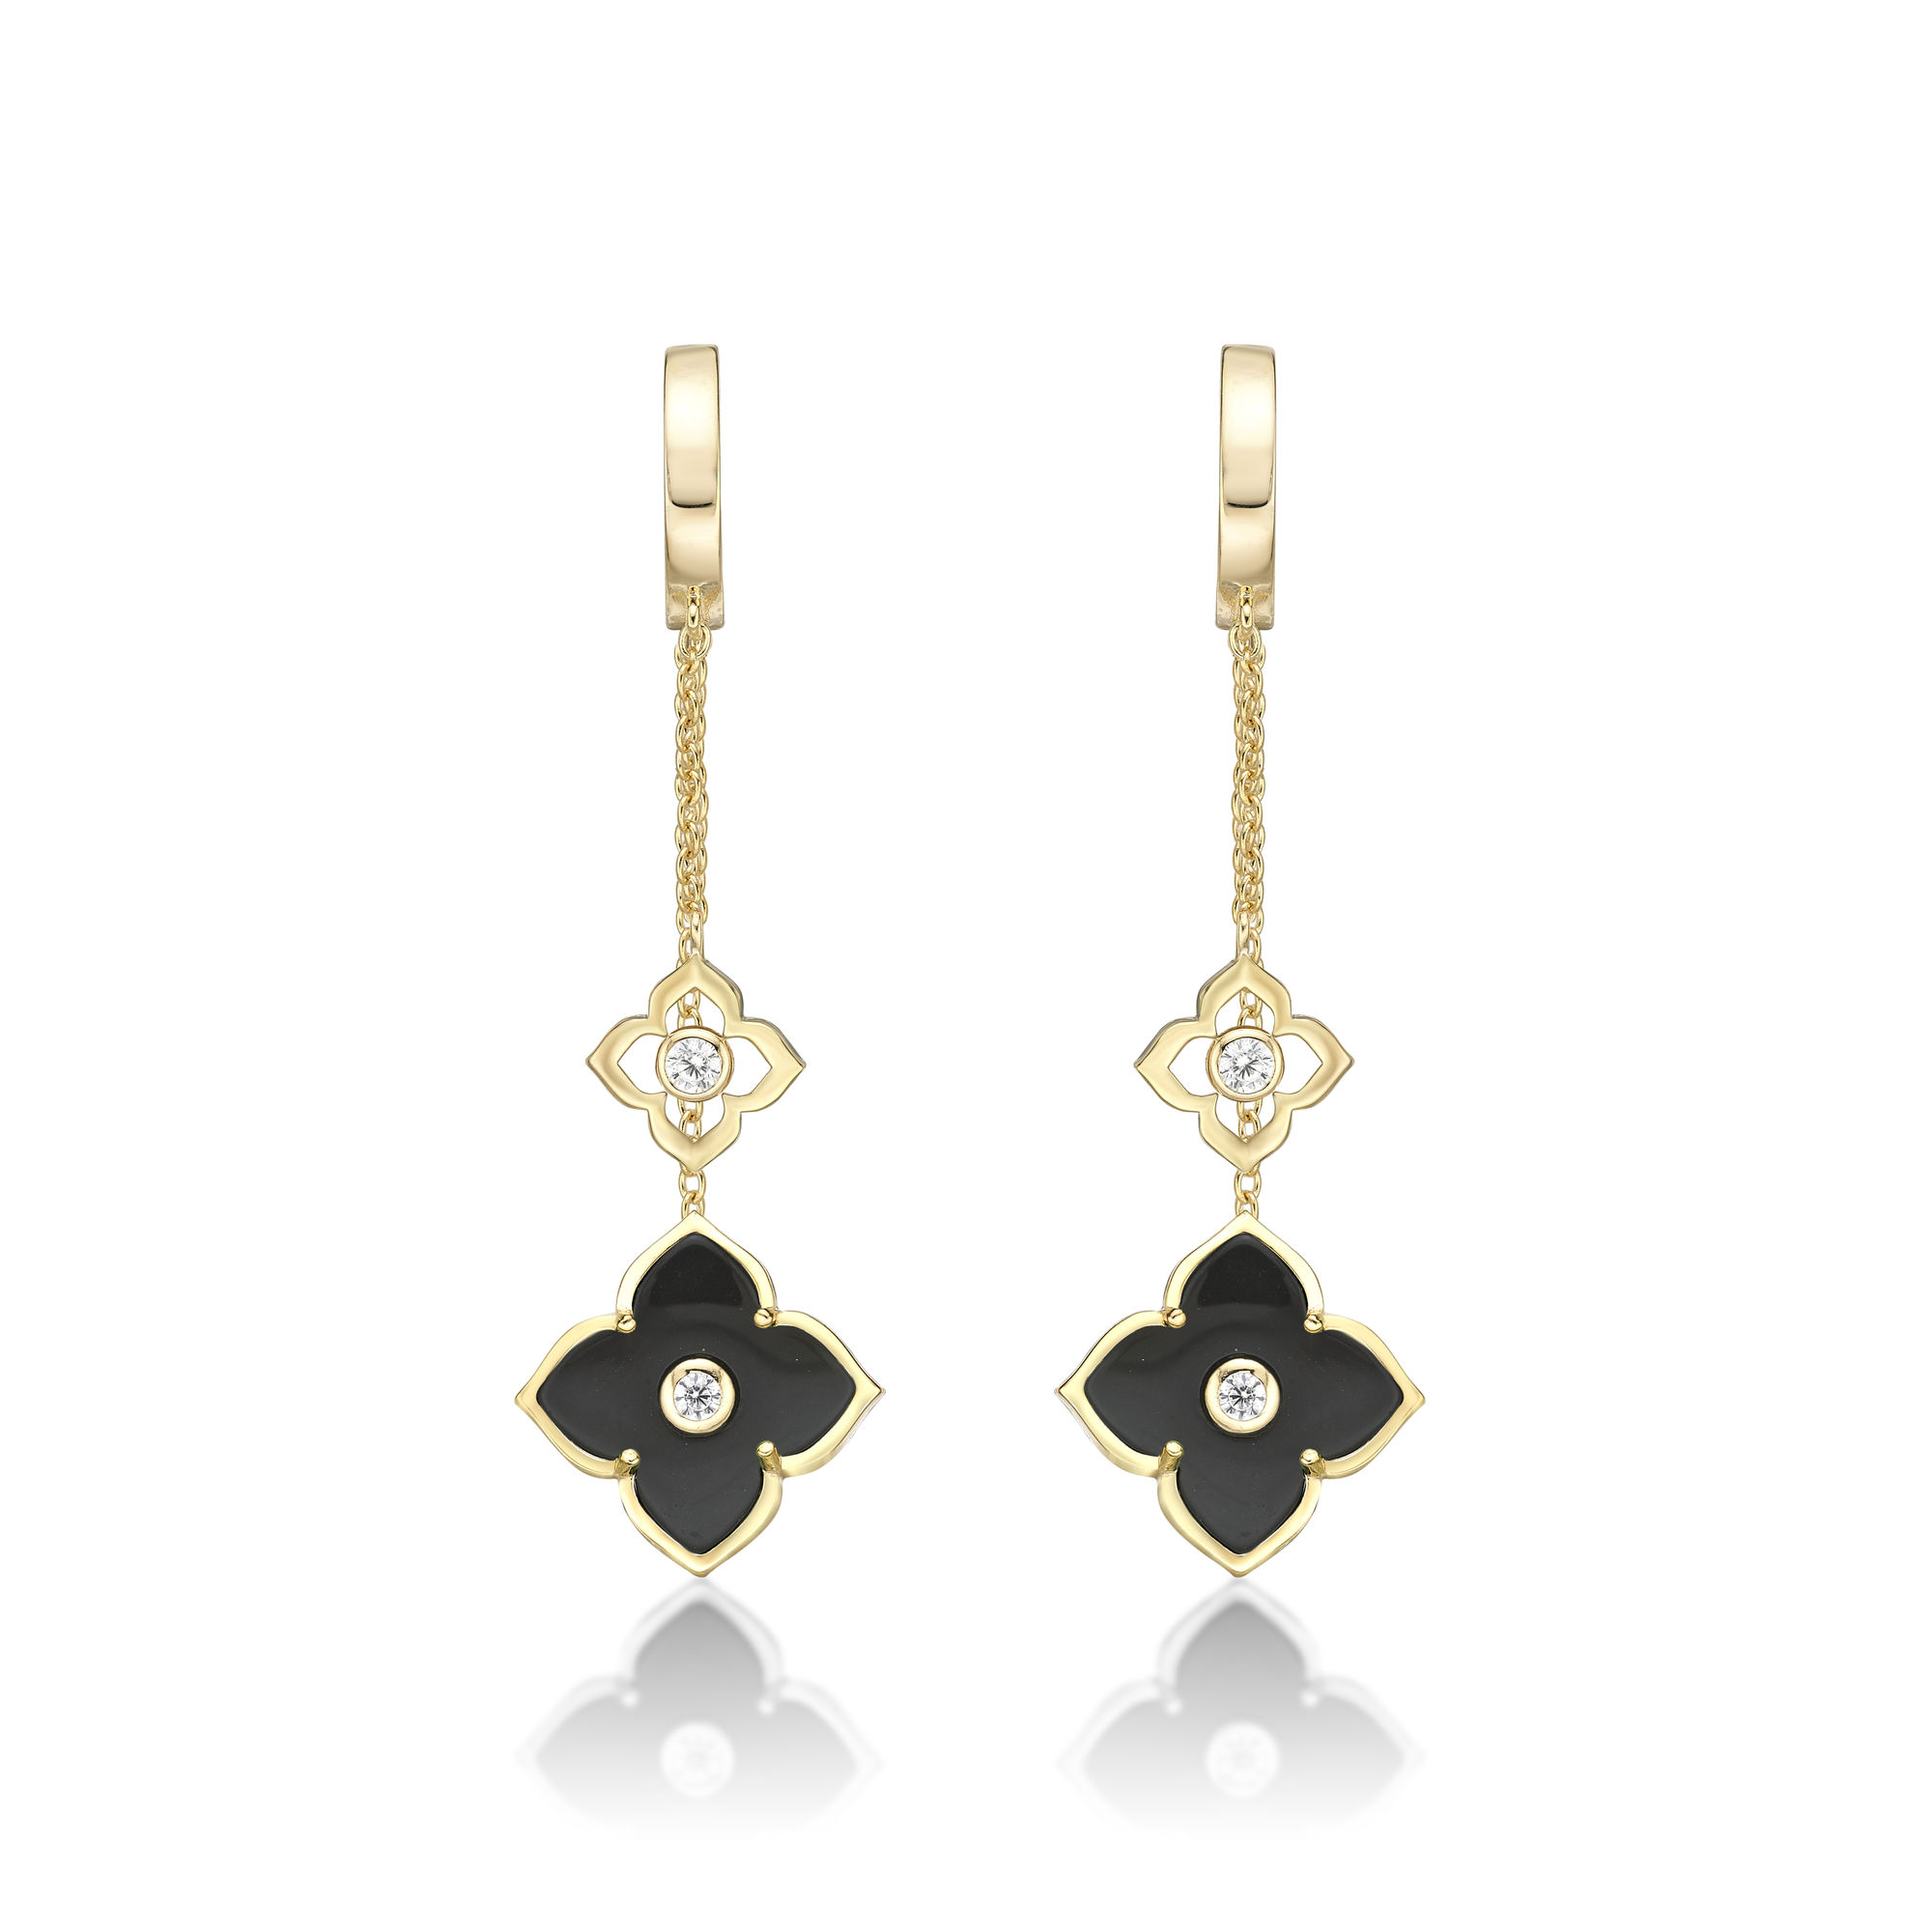 48781-earrings-fashion-jewelry-yellow-sterling-silver-48781-3.jpg